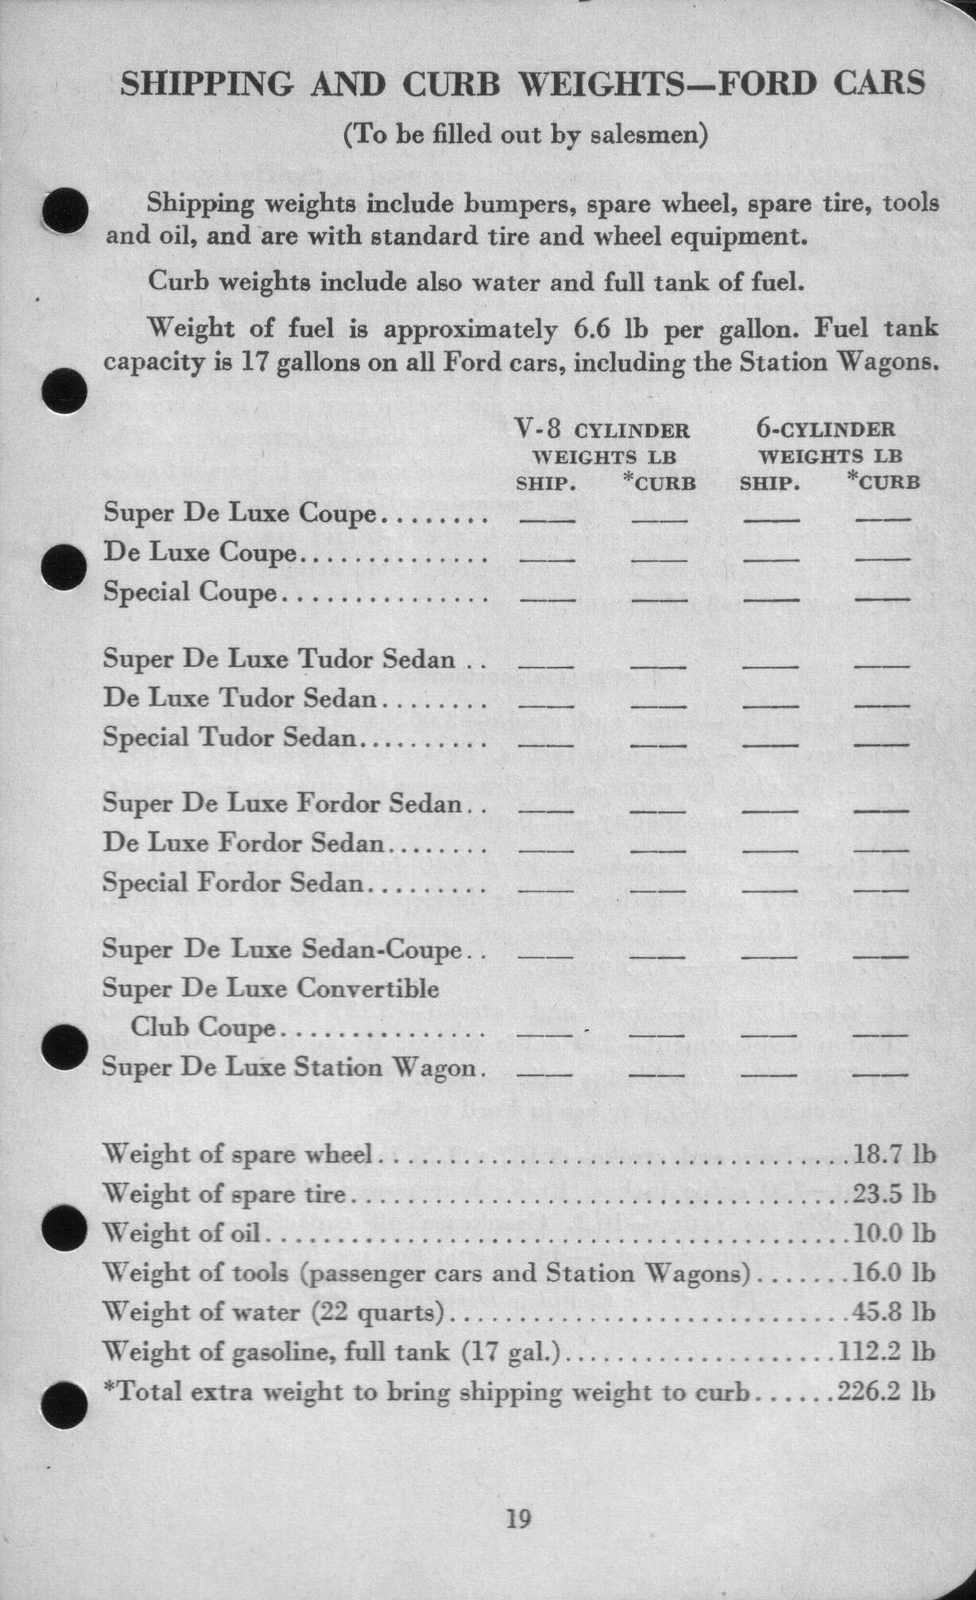 n_1942 Ford Salesmans Reference Manual-019.jpg